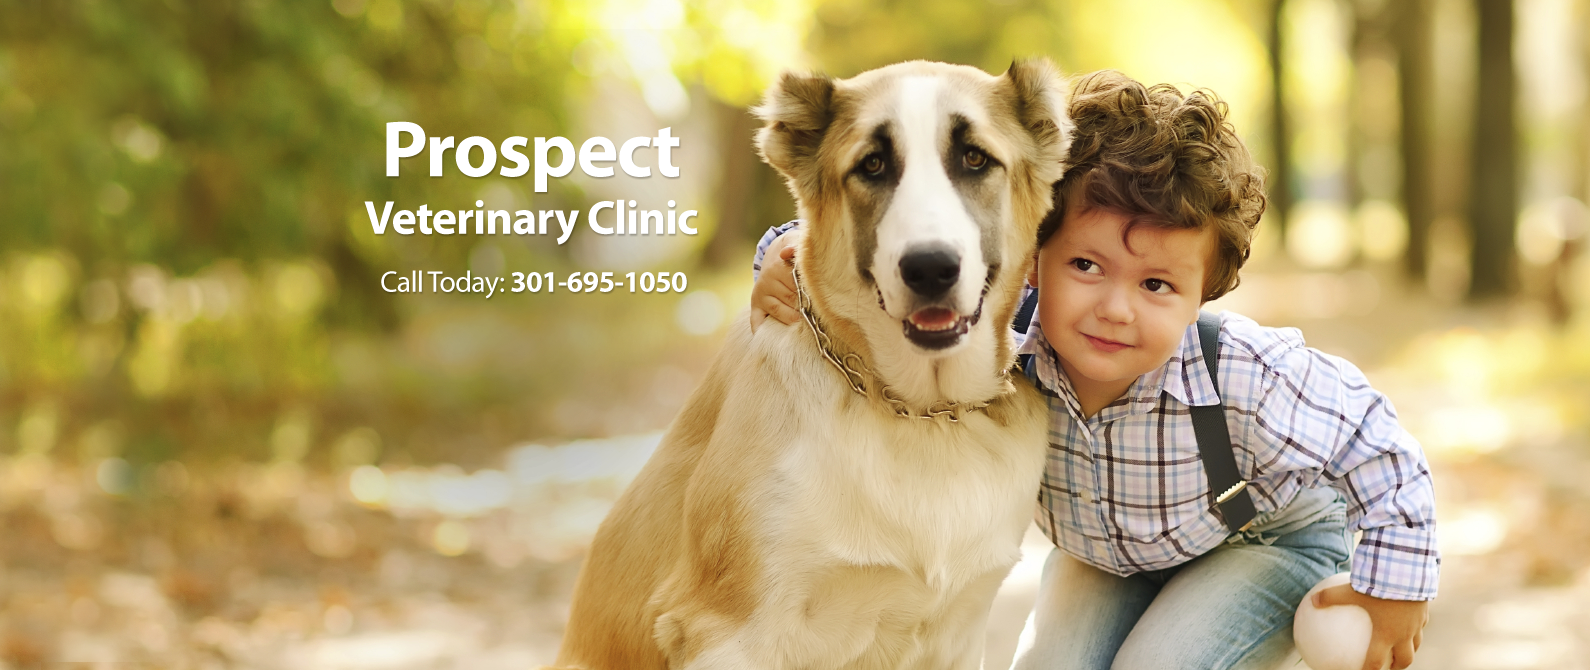 Prospect Veterinary Clinic